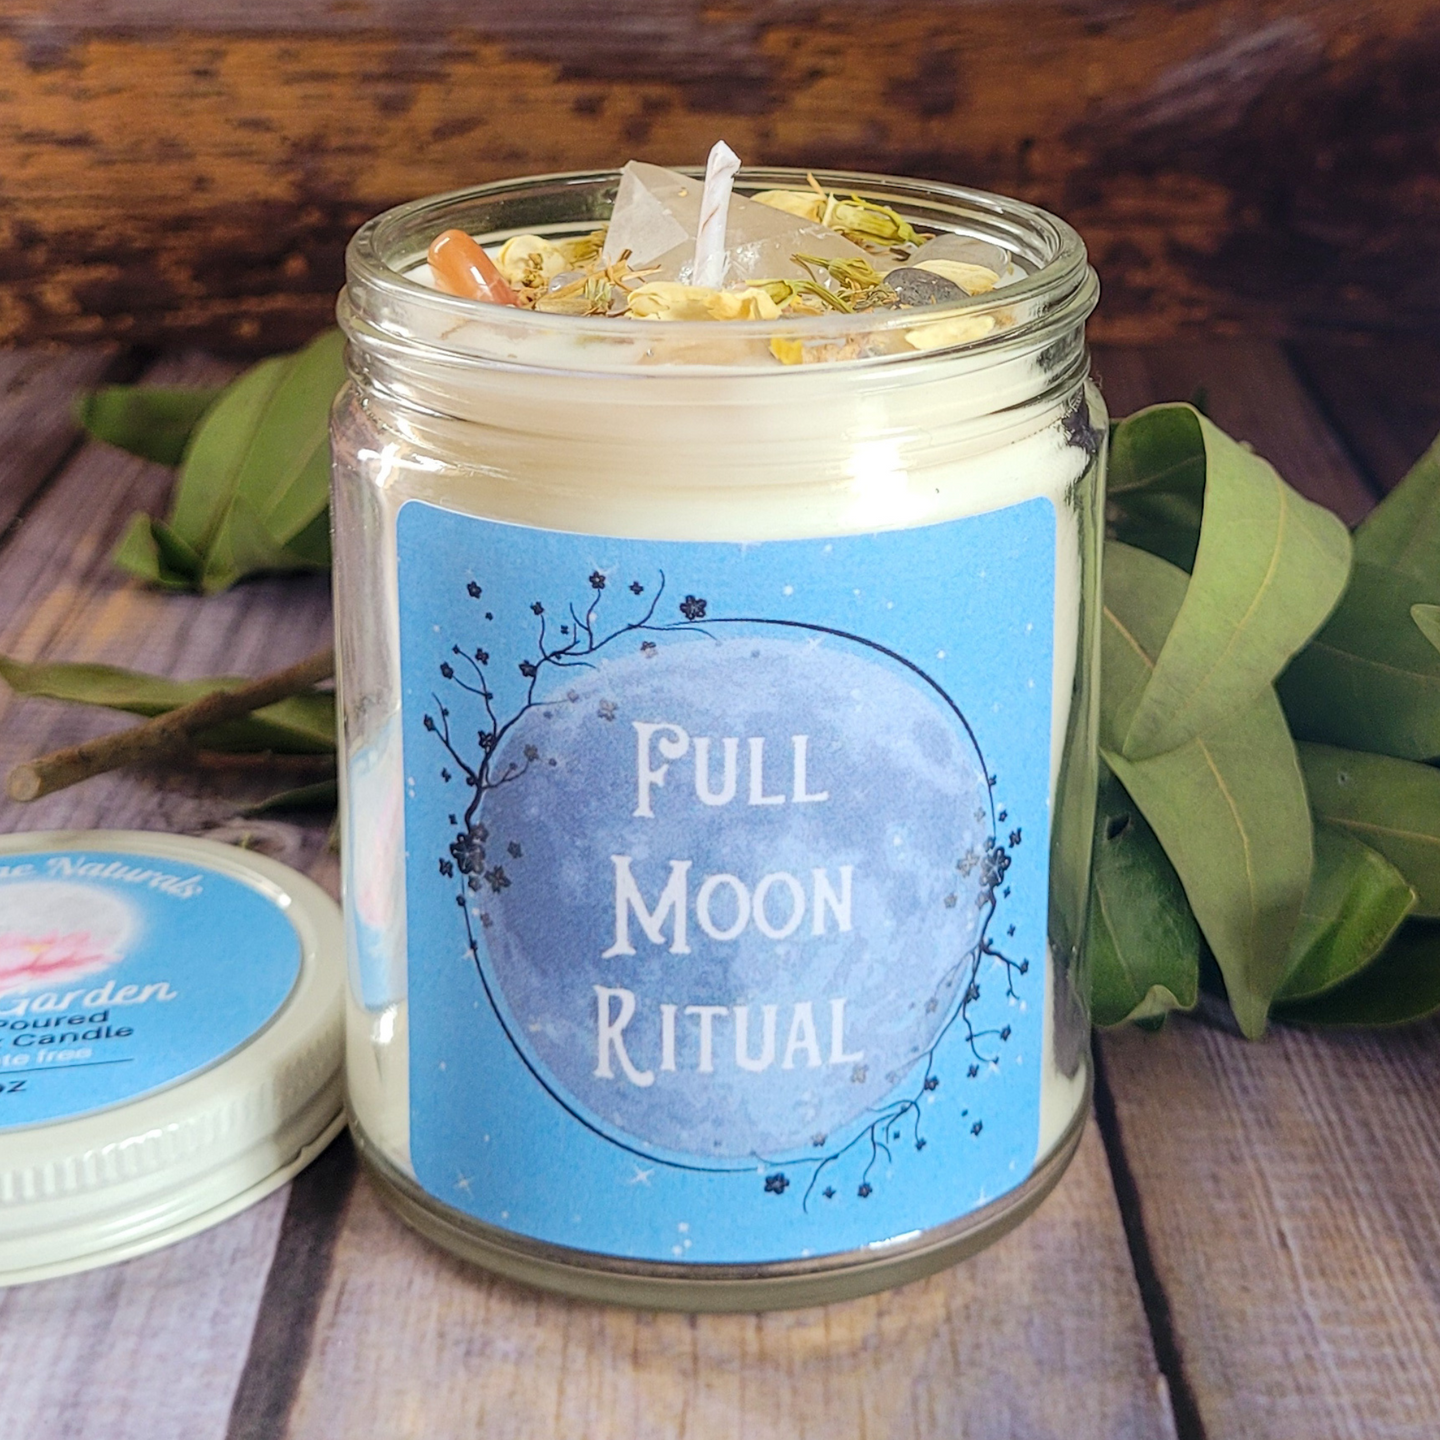 Full moon ritual candle